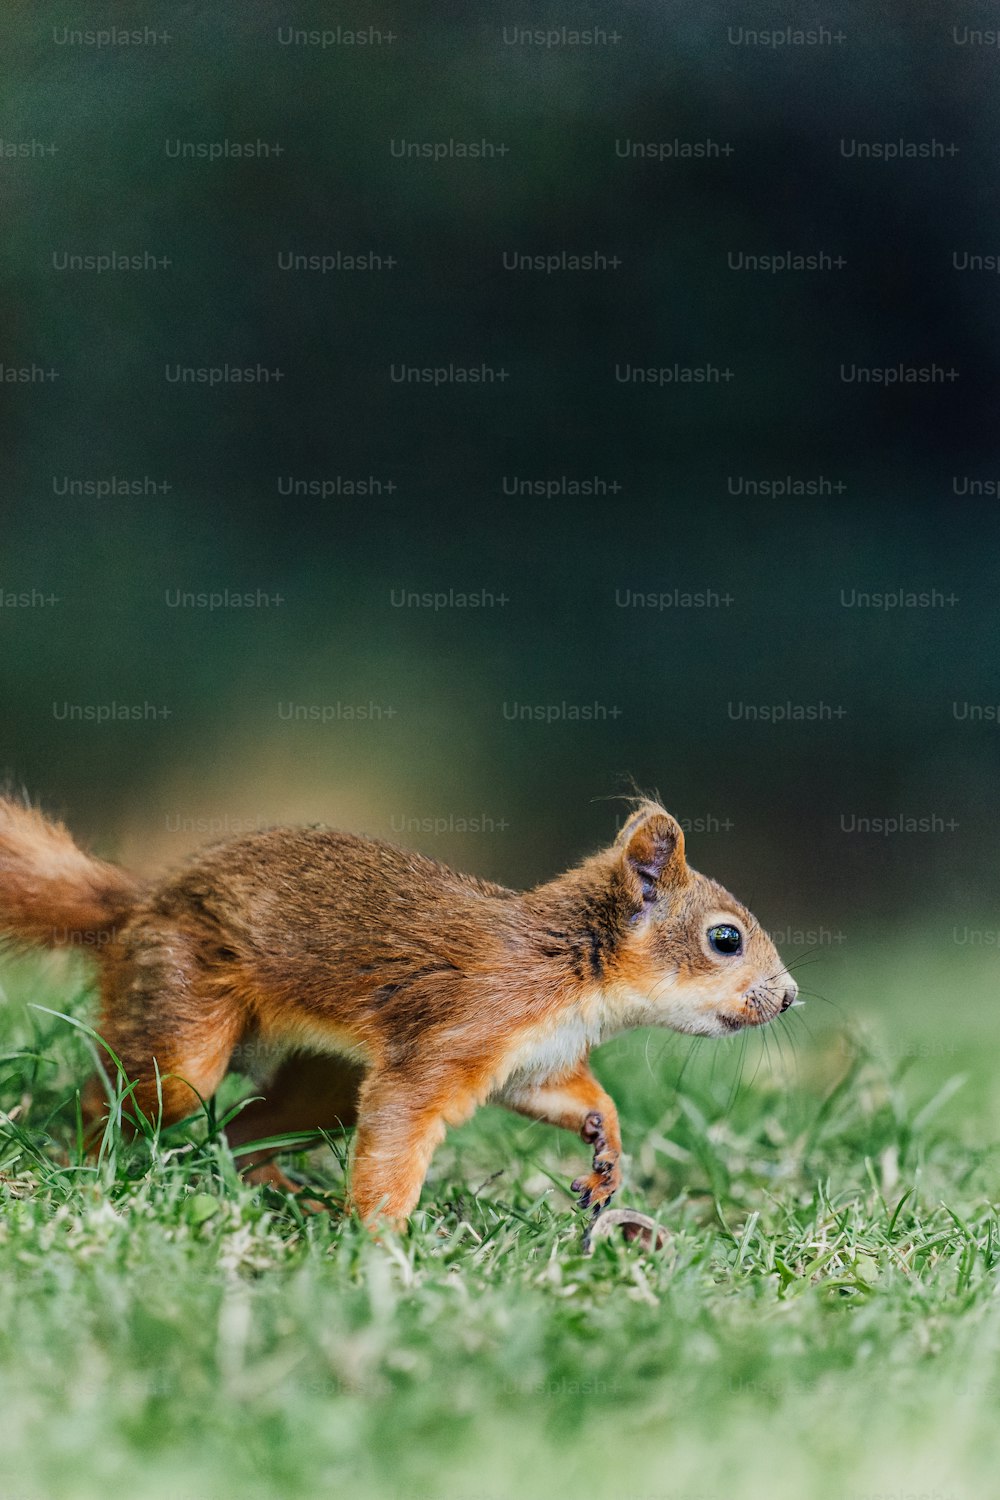 Un petit écureuil marchant à travers un champ verdoyant